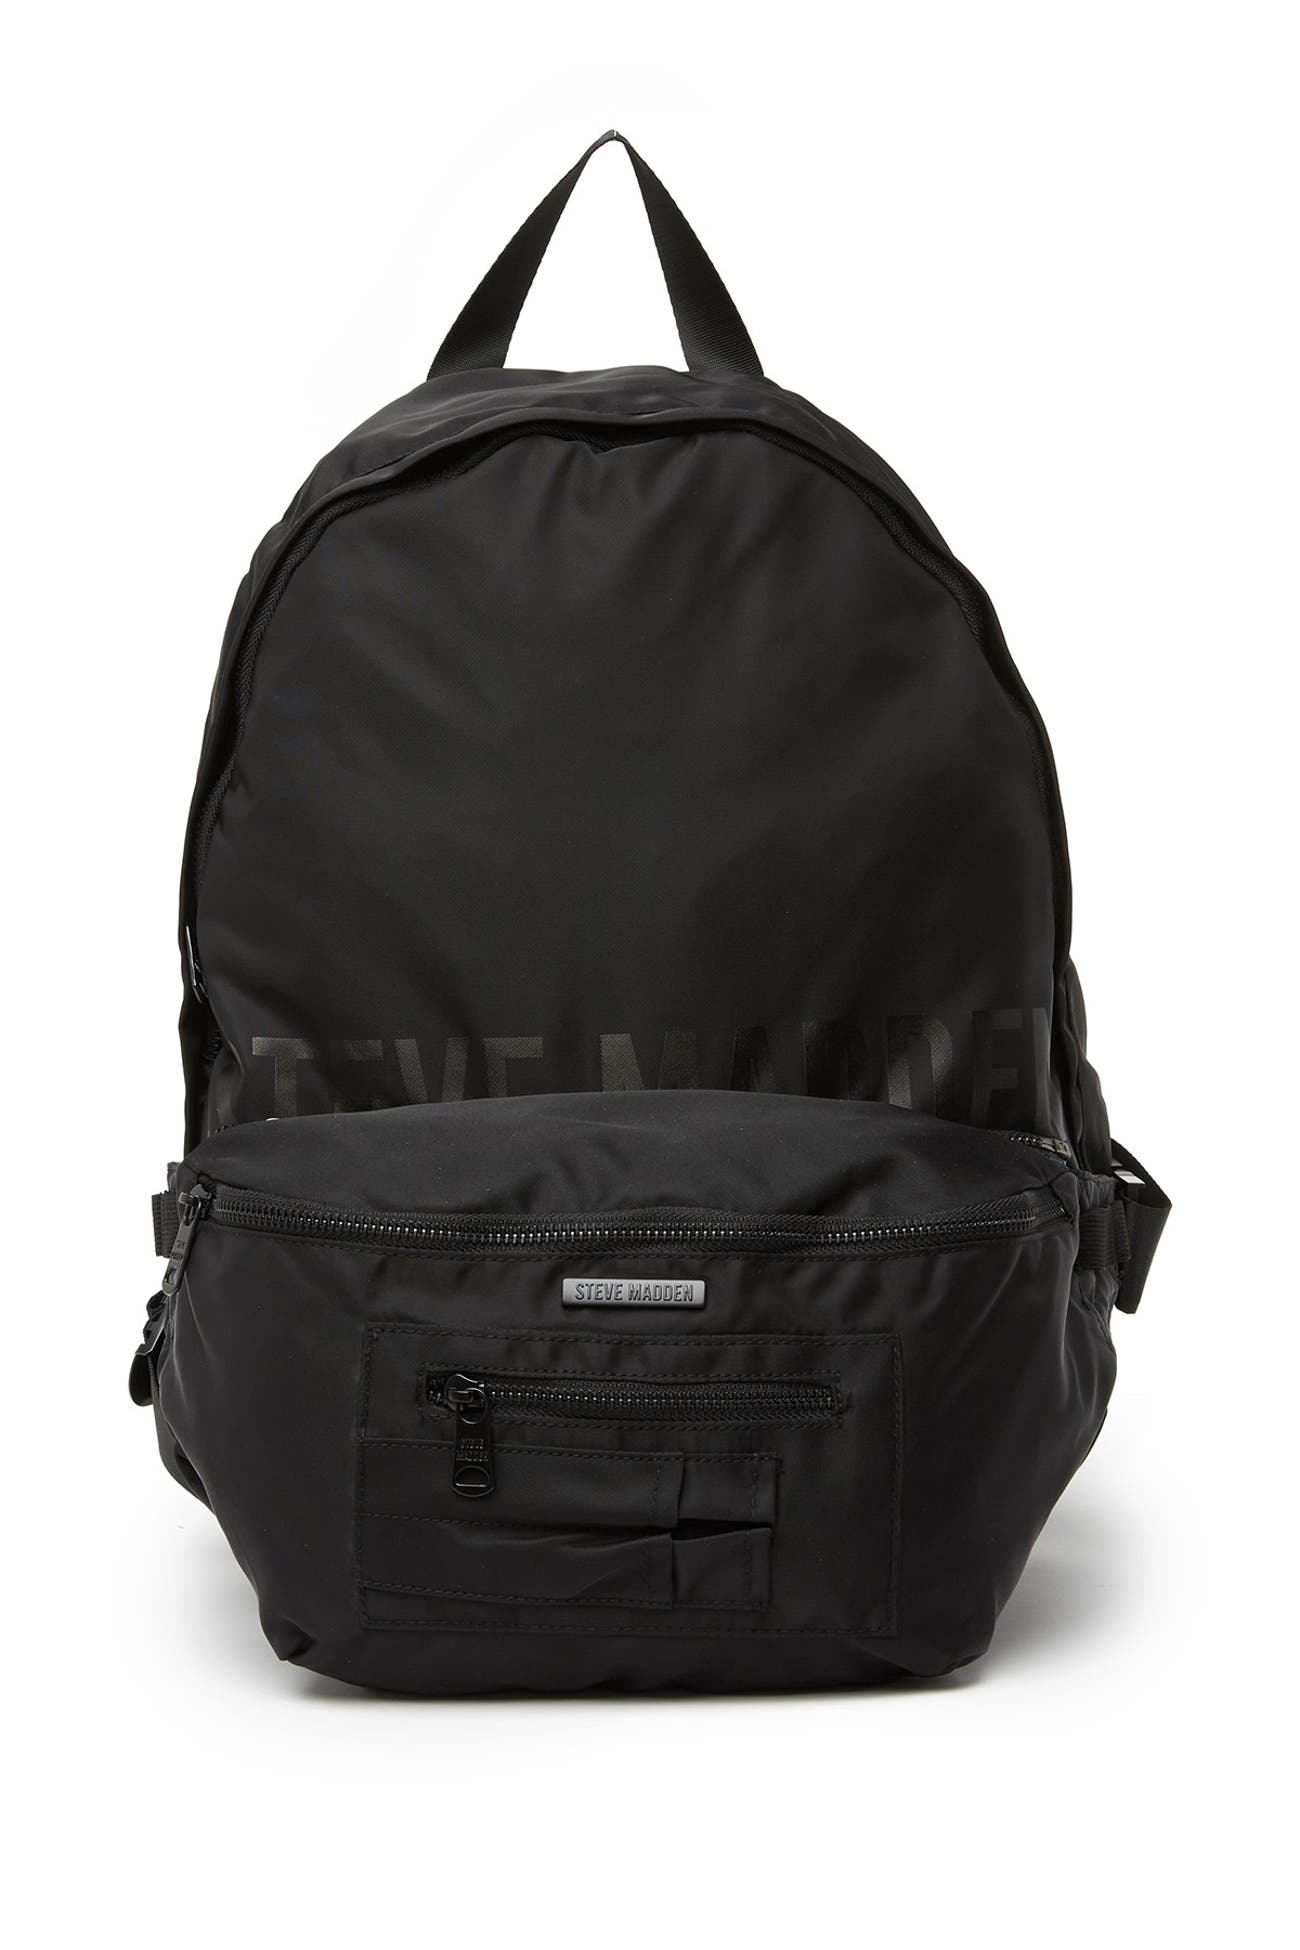 Steve Madden | Nylon Backpack with Detachable Fanny Pack | Nordstrom Rack